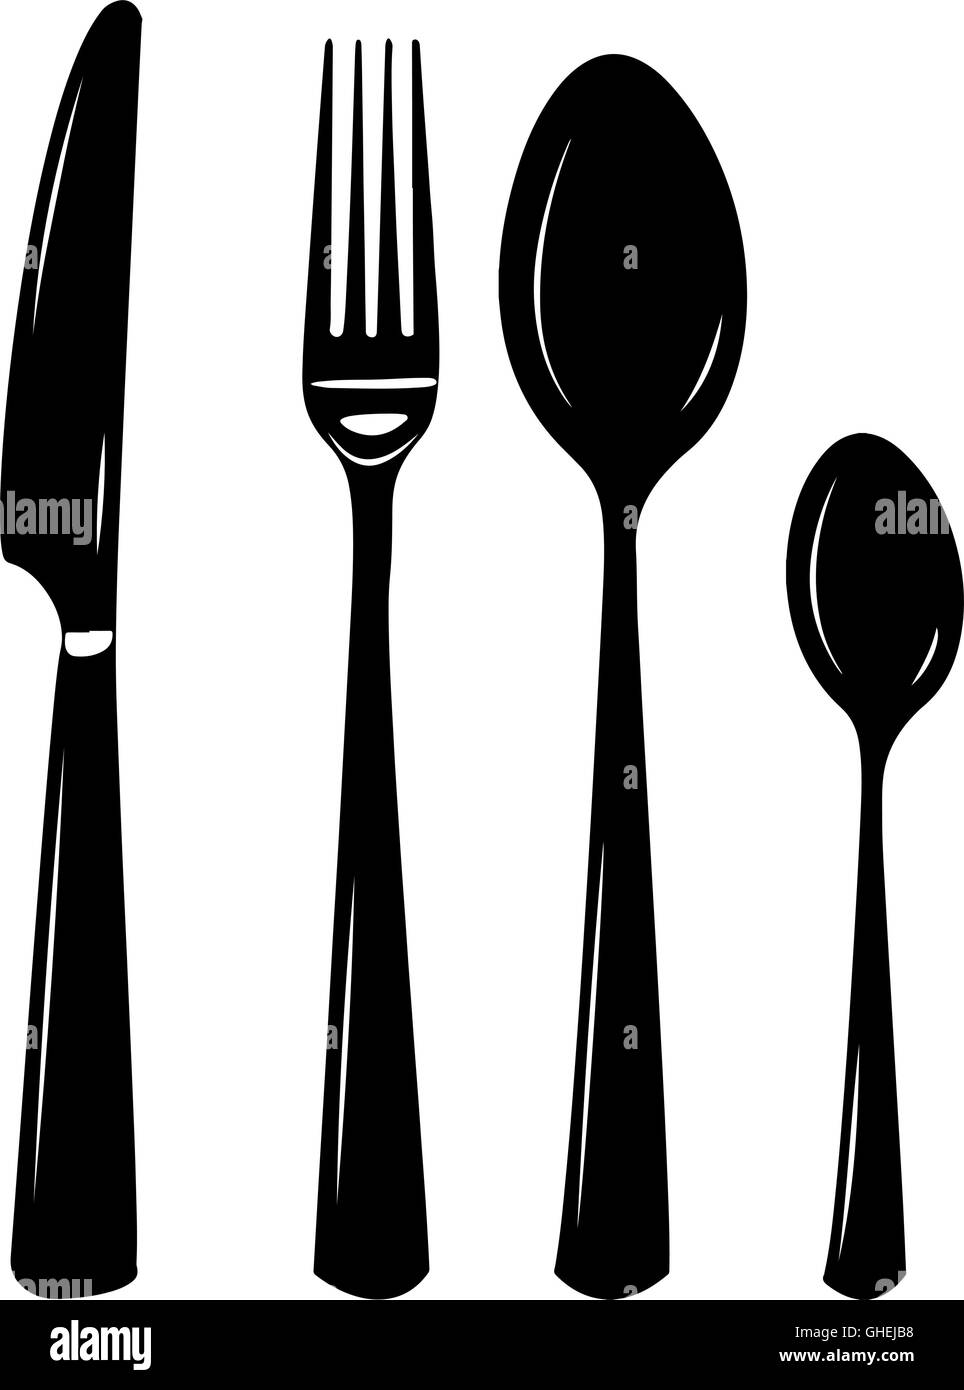 Besteck-Vektor-Illustration von Messer, Löffel, Gabel, Teelöffel. Silhouetten in schwarz / weiß Stock Vektor